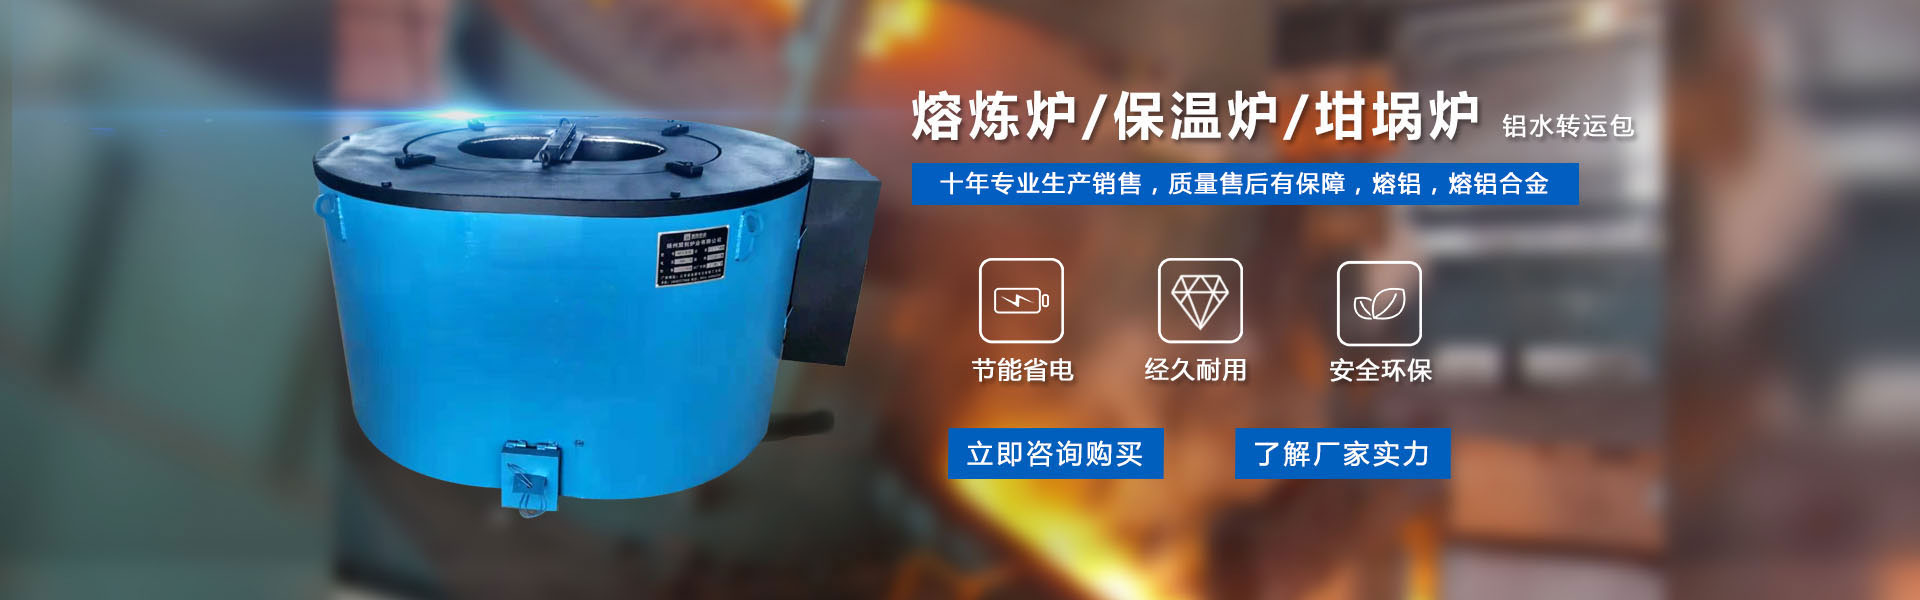 电炉袋式除尘器的组成与结构-行业新闻-扬州电炉-锌合金保温炉-铝合金熔化炉公司-盟创炉业